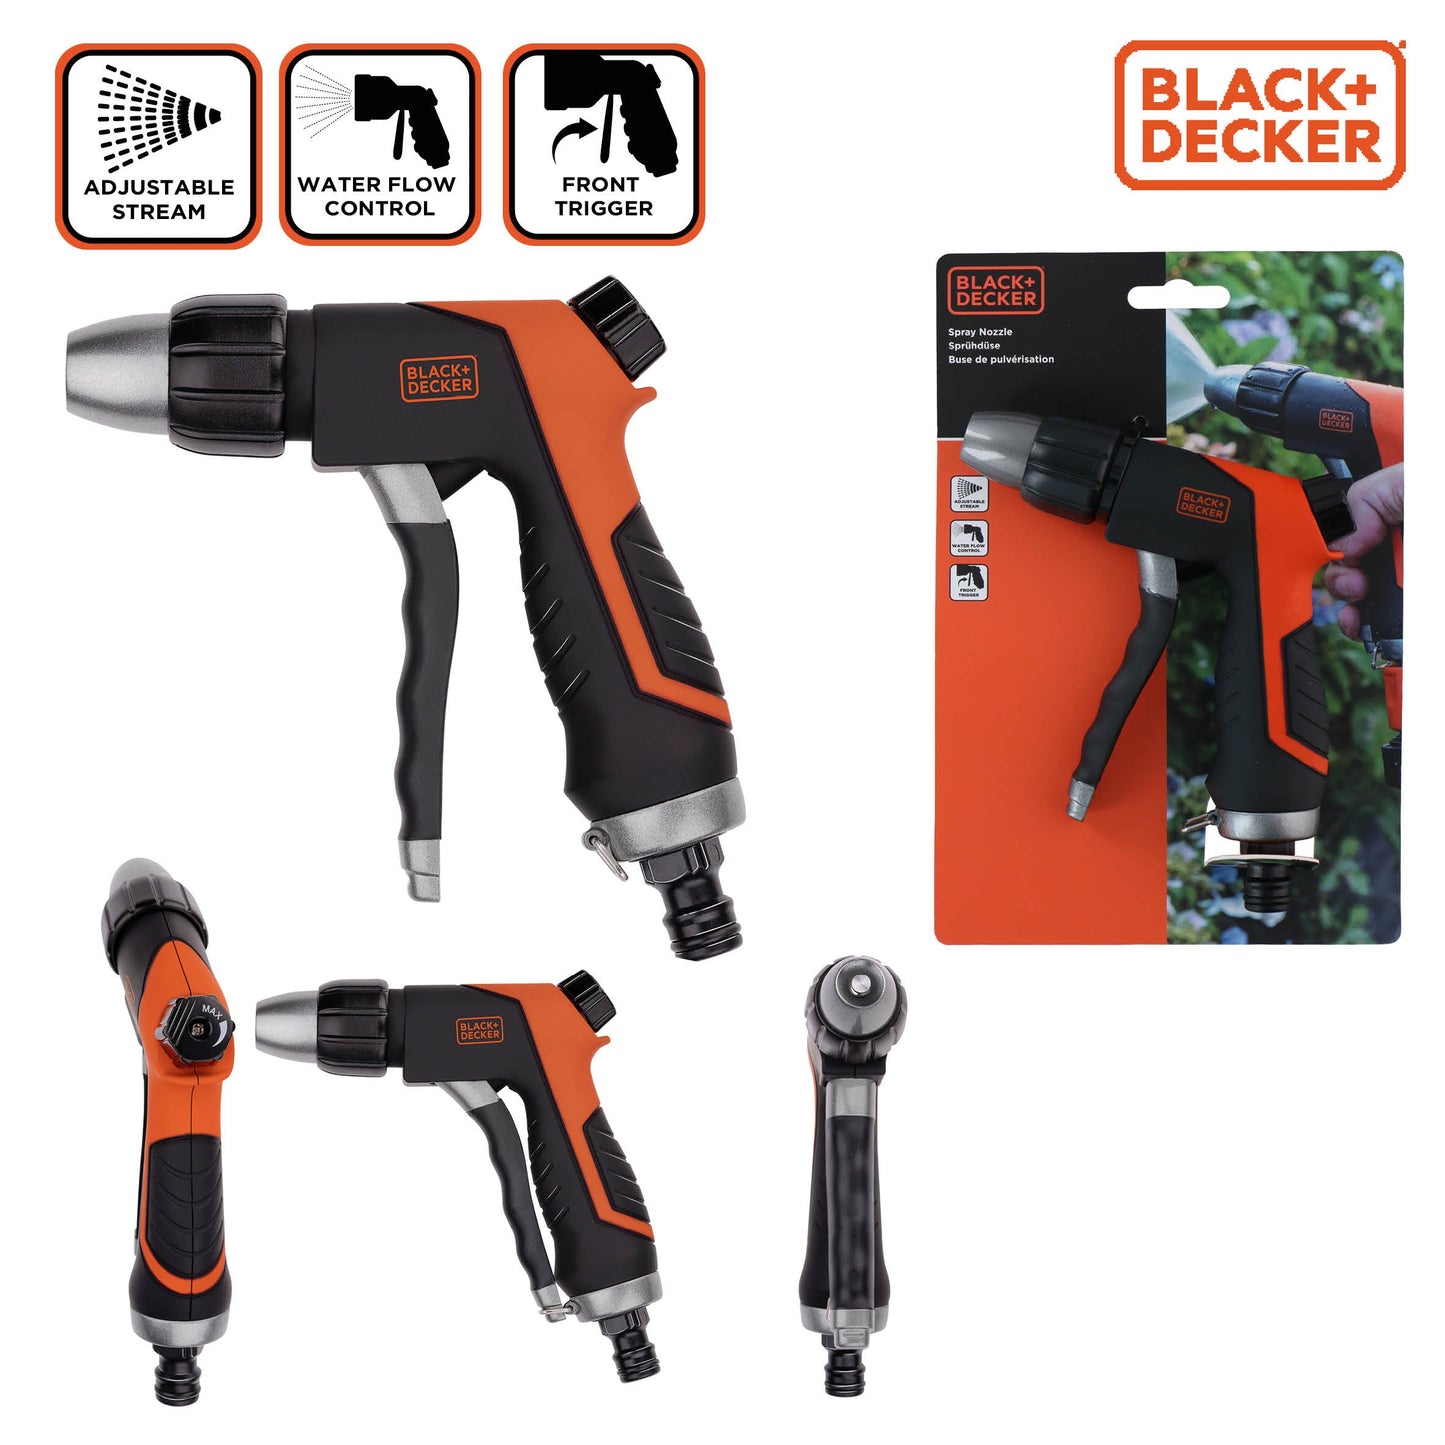 BLACK+DECKER spuitpistool - Perfect voor tuinbesproeiing - Bivakshop